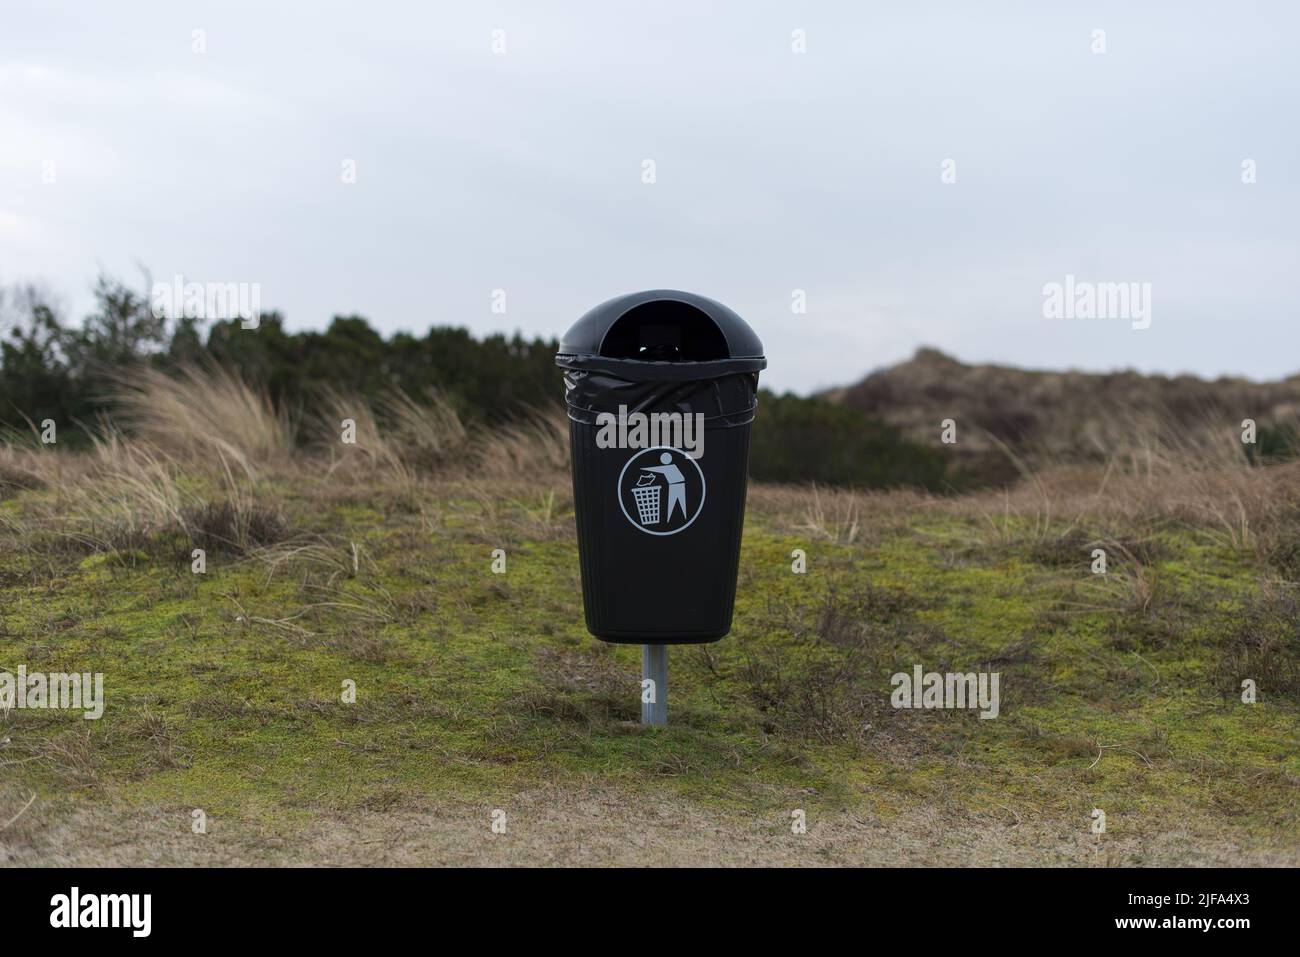 vider la poubelle noire avec un sac poubelle et un pictogramme debout dans l'herbe dans les dunes de sable pendant une journée d'hiver nuageuse Banque D'Images